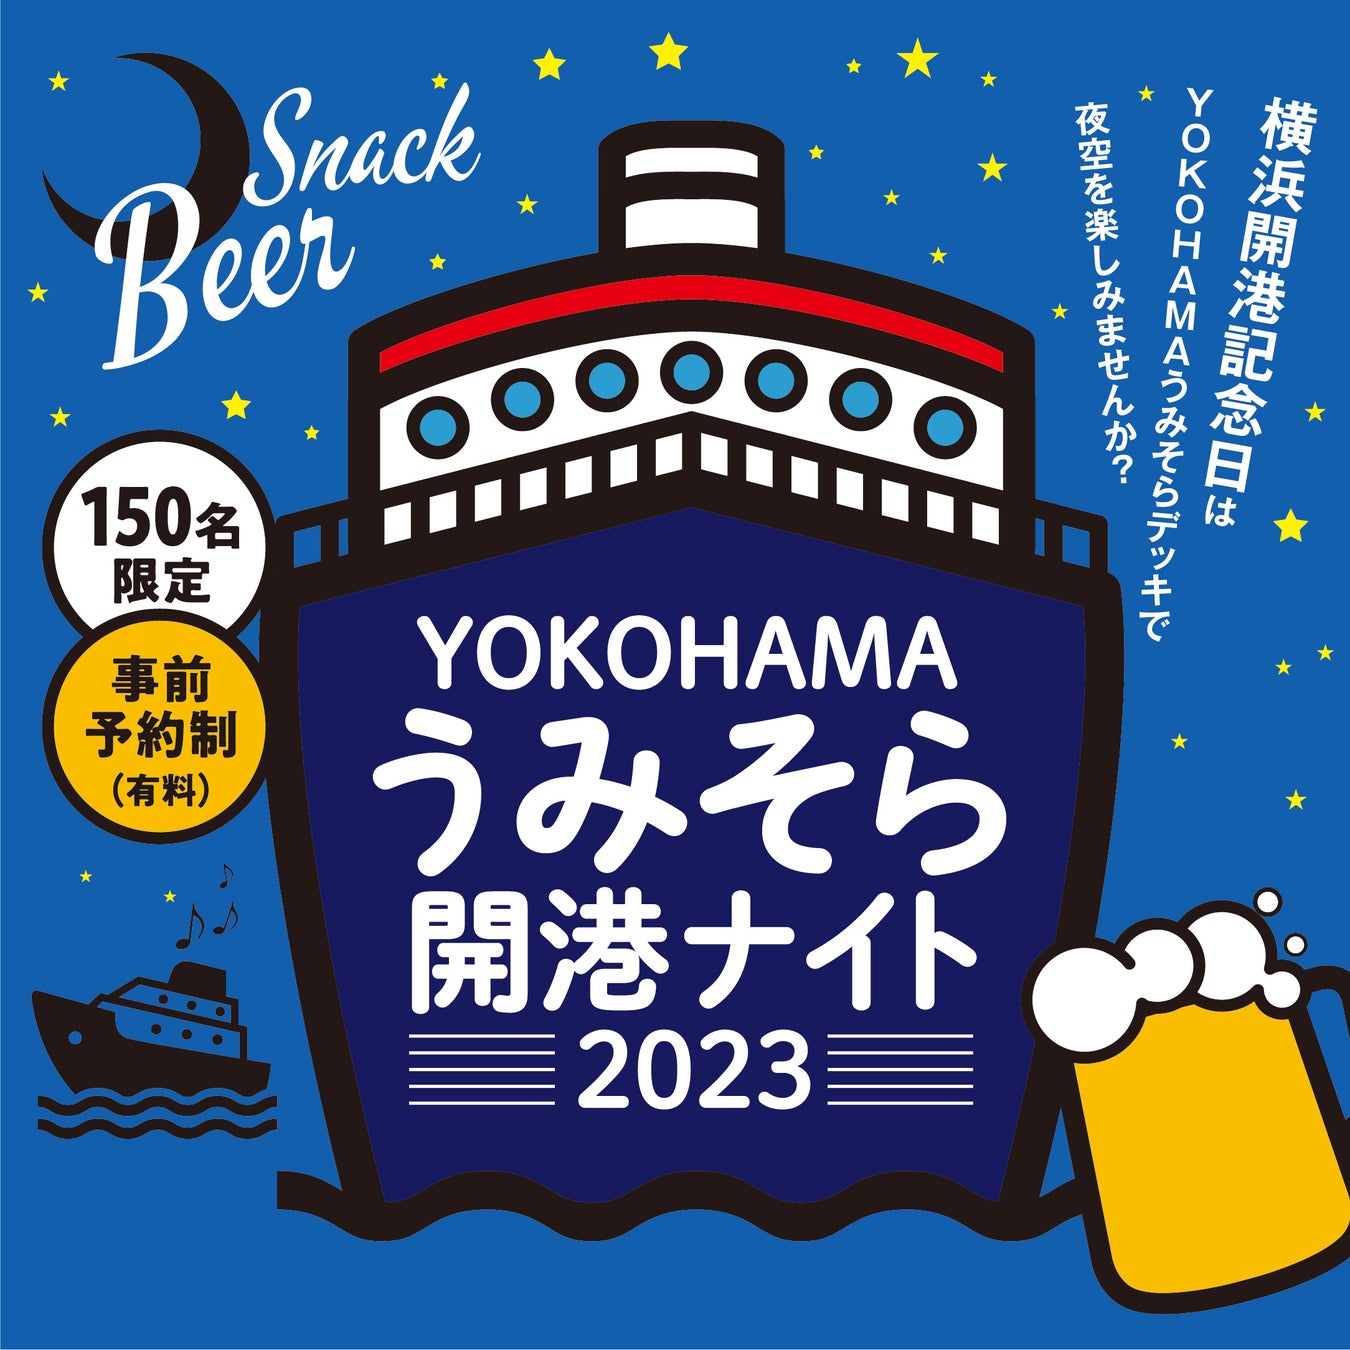 「YOKOHAMA うみそら開港ナイト」開催のサブ画像1